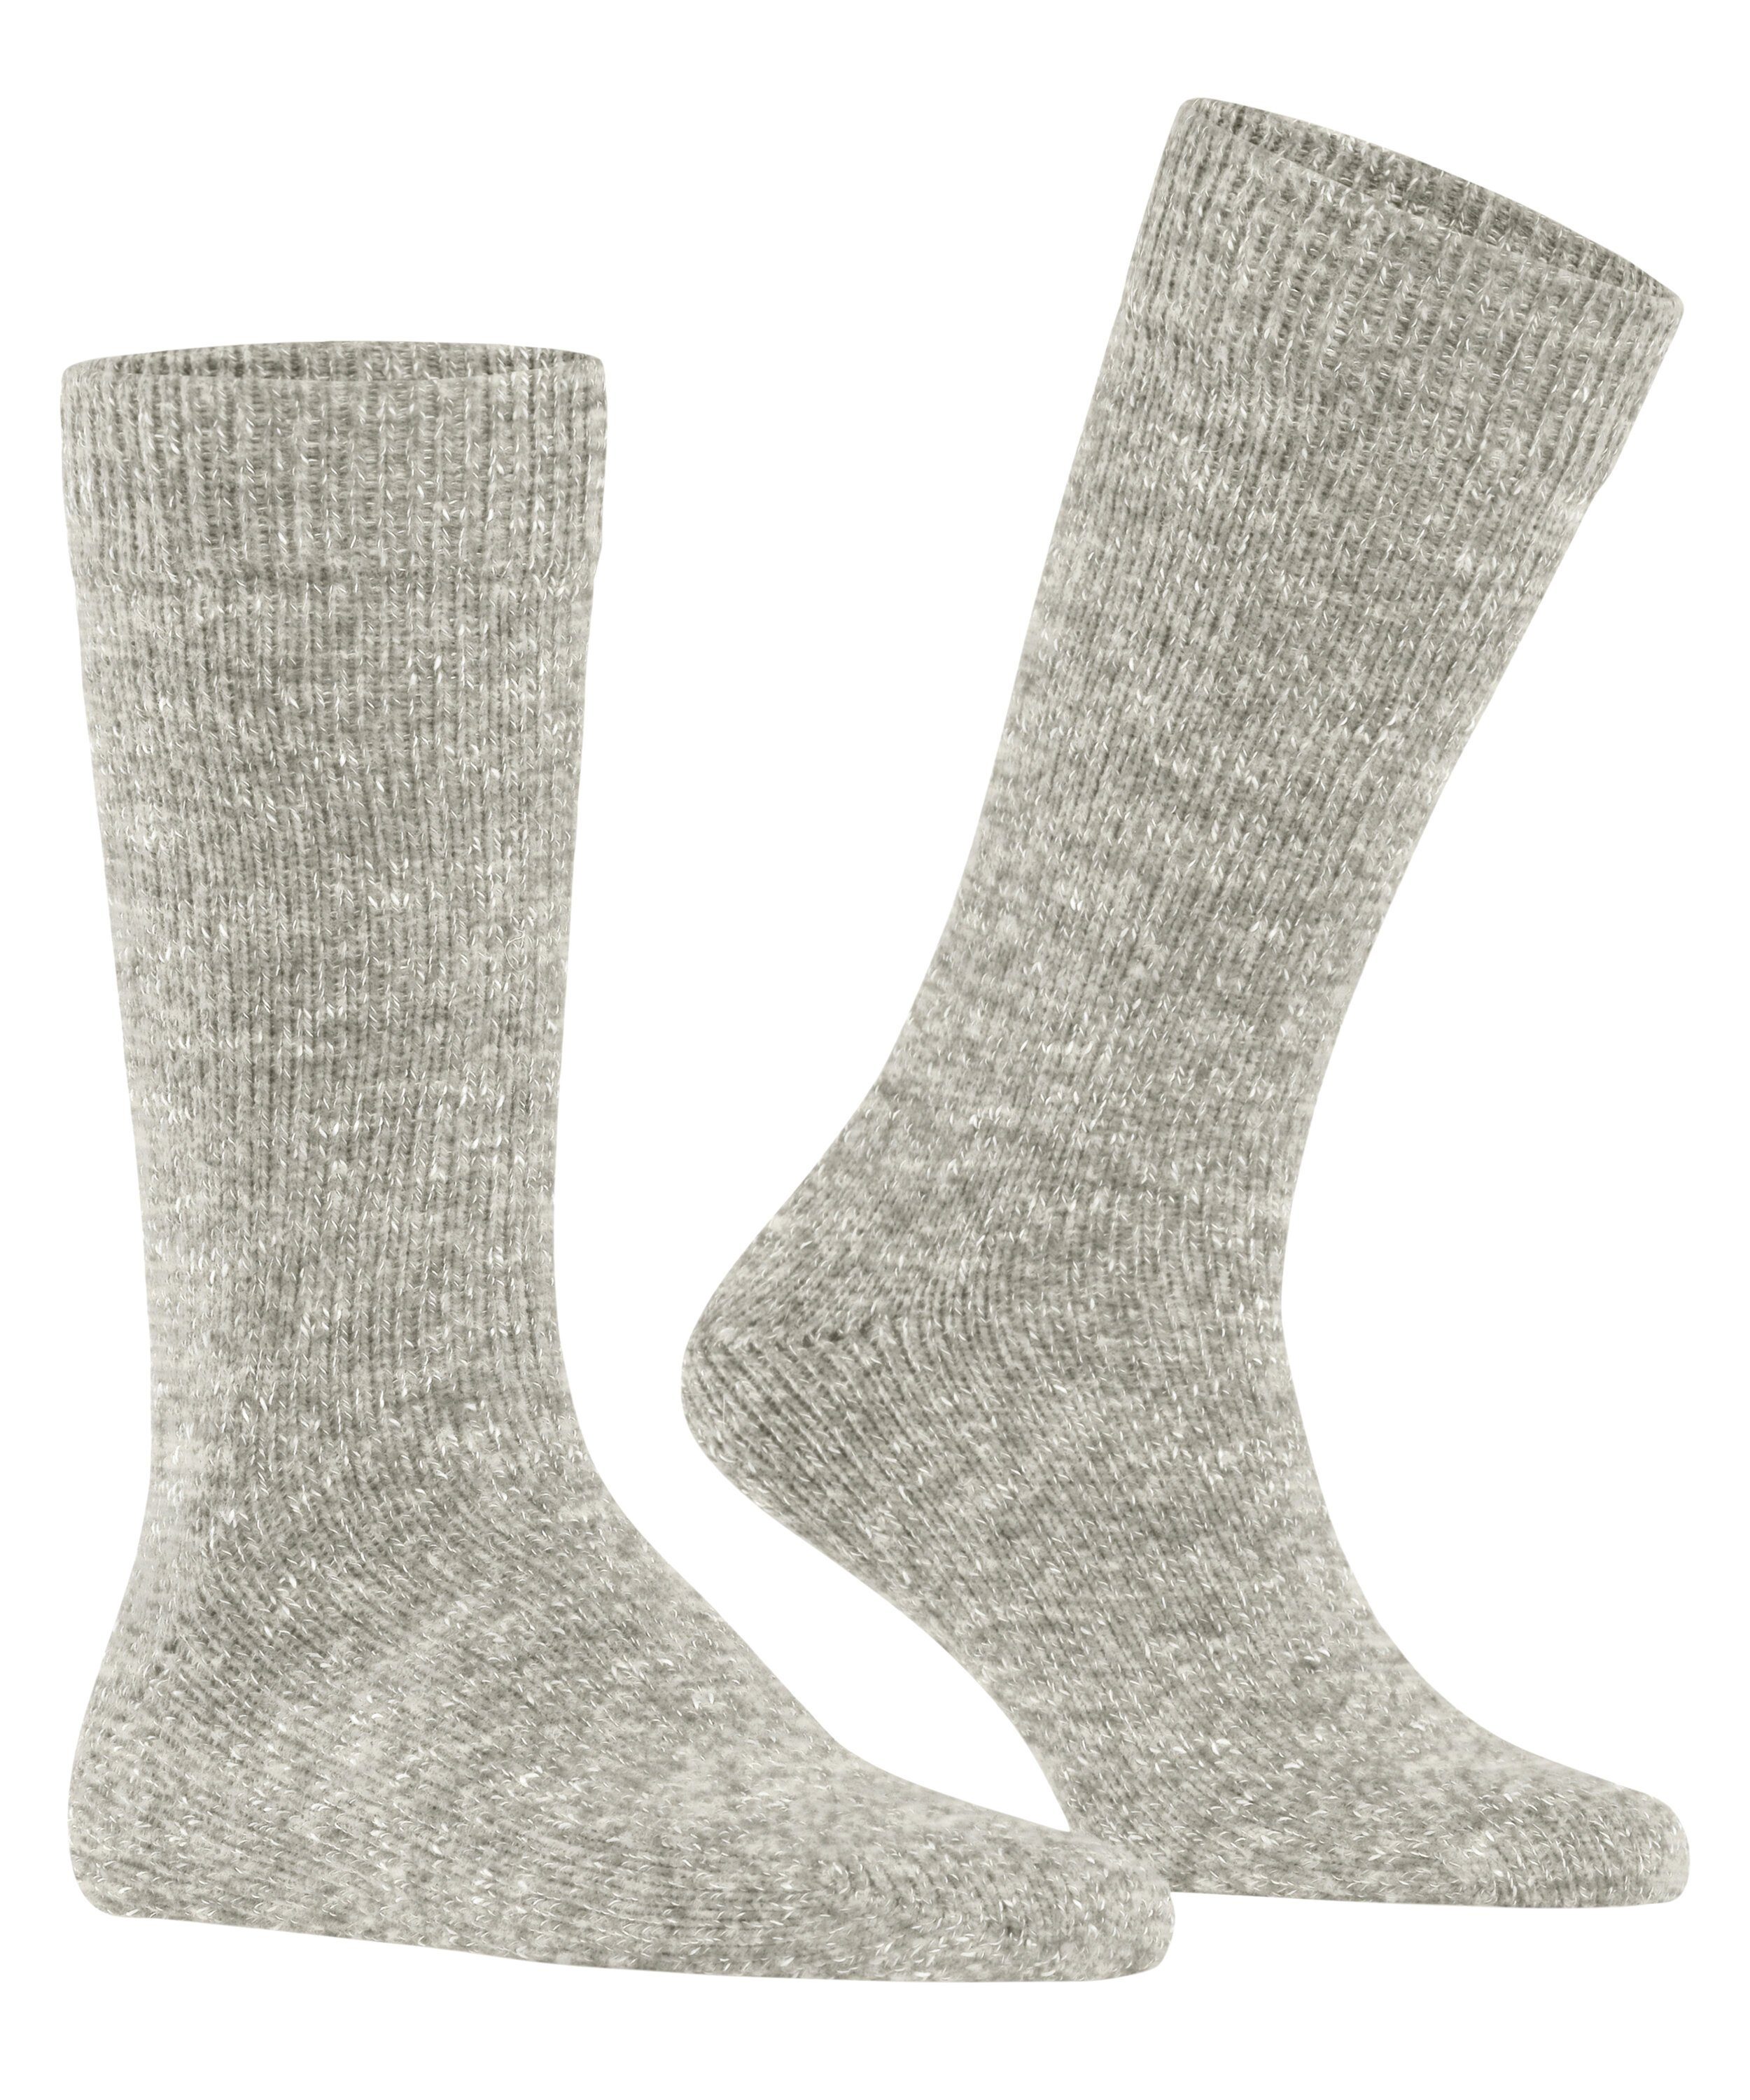 (0323) Socken (1-Paar) Festive Esprit Boot mouline